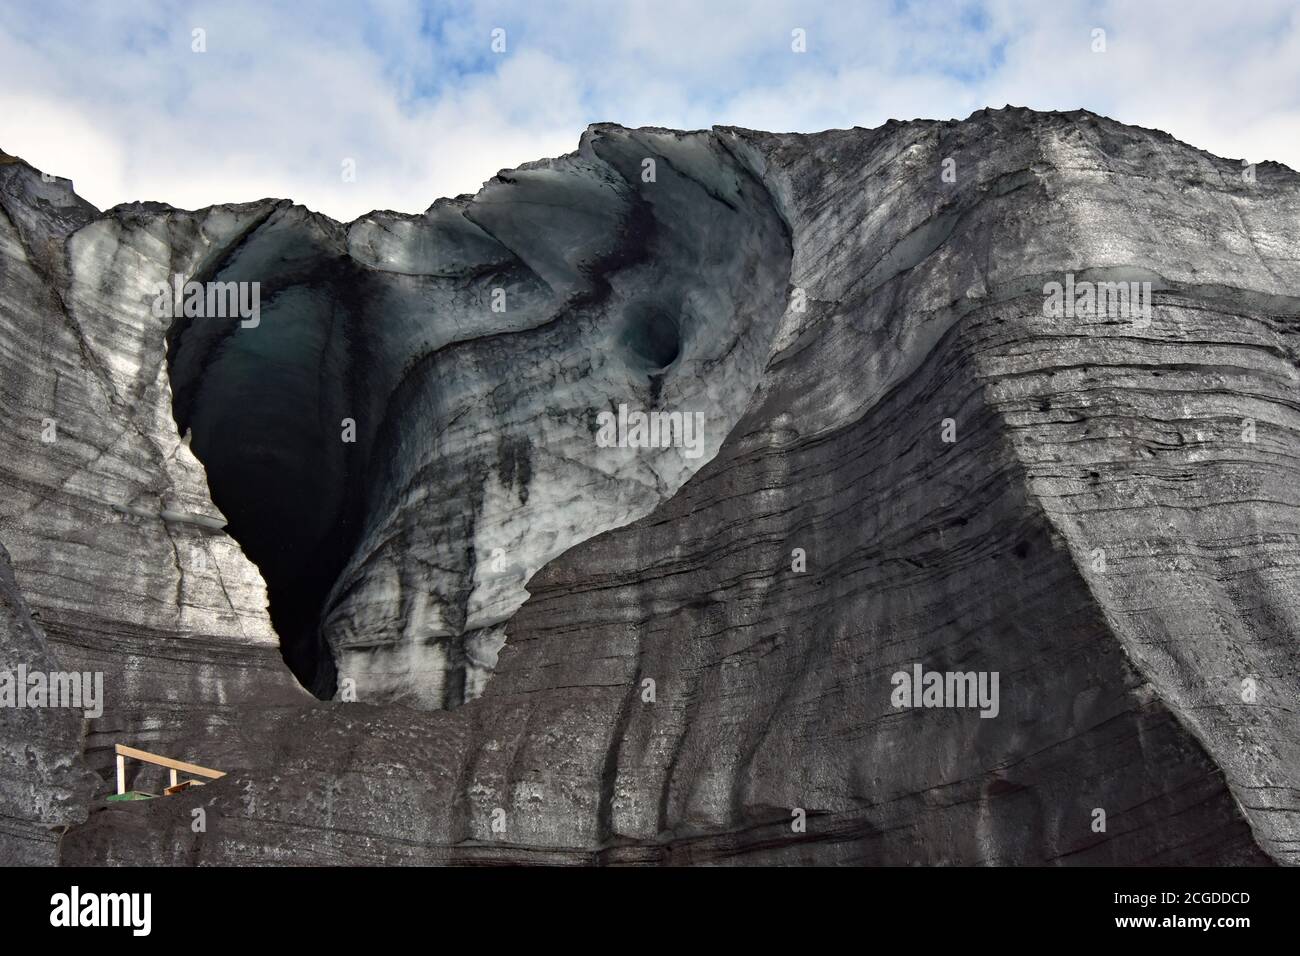 L'ingresso alla Grotta di ghiaccio di Katla nel Ghiacciaio Myrdalsjokull. Una grande grotta si è formata a causa dell'acqua corrente all'interno del ghiacciaio. Islanda del Sud. Foto Stock